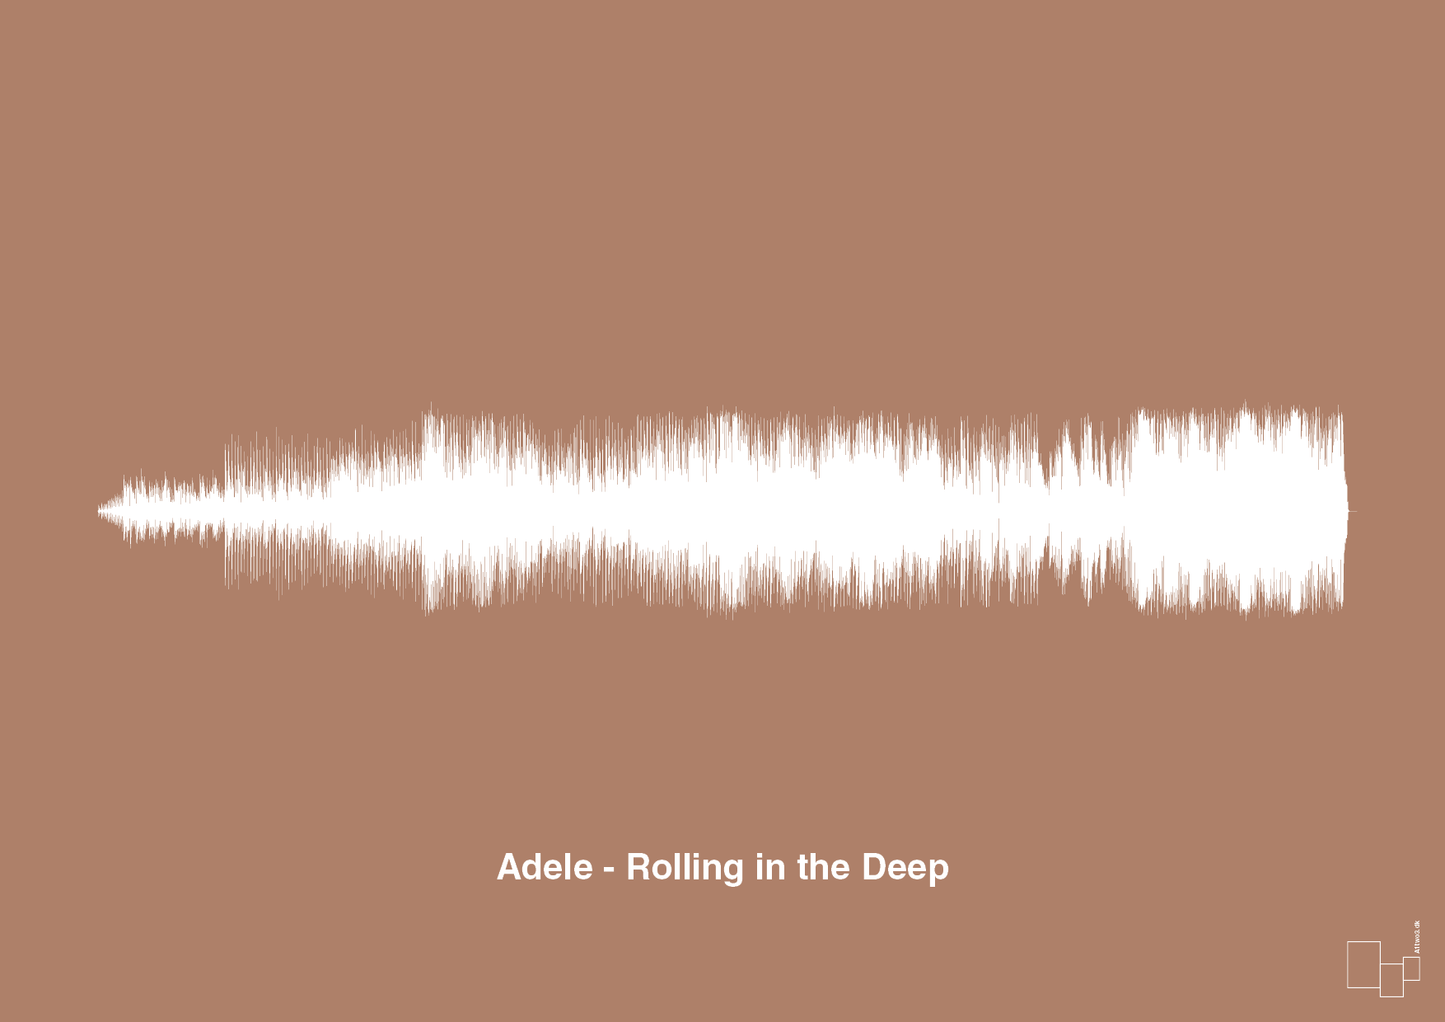 adele - rolling in the deep - Plakat med Musik i Cider Spice